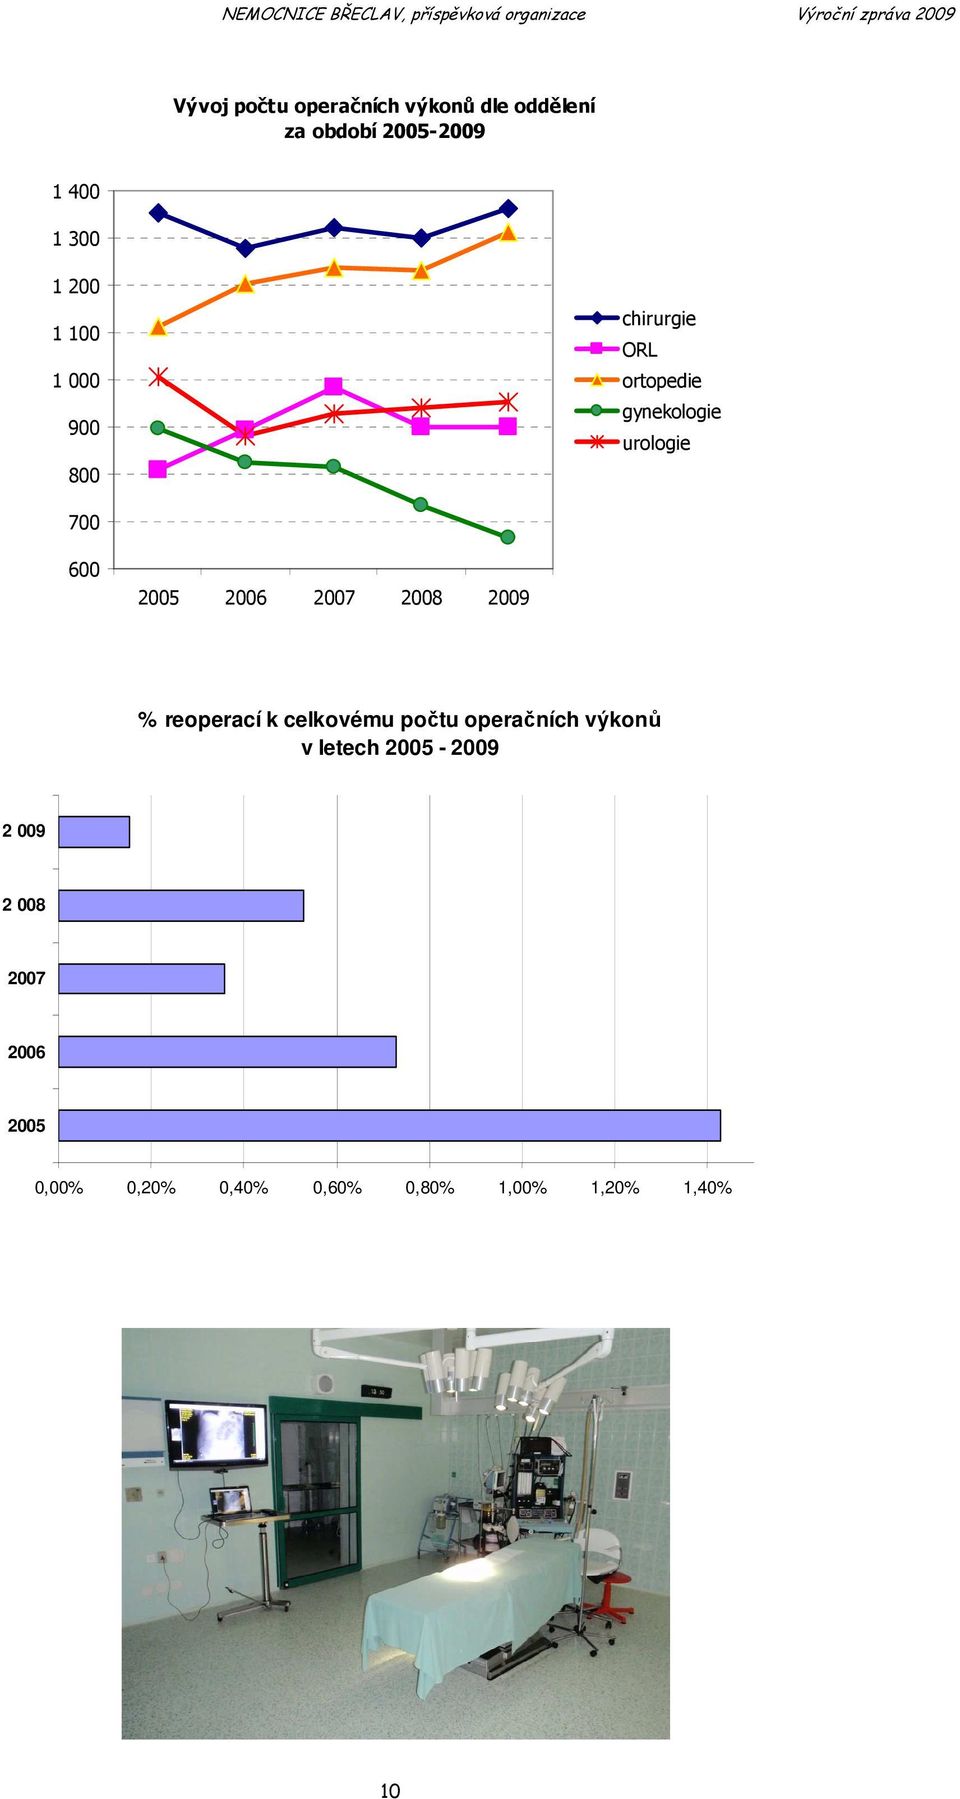 600 % reoperací k celkovému počtu operačních výkonů v letech 2005-2009 2